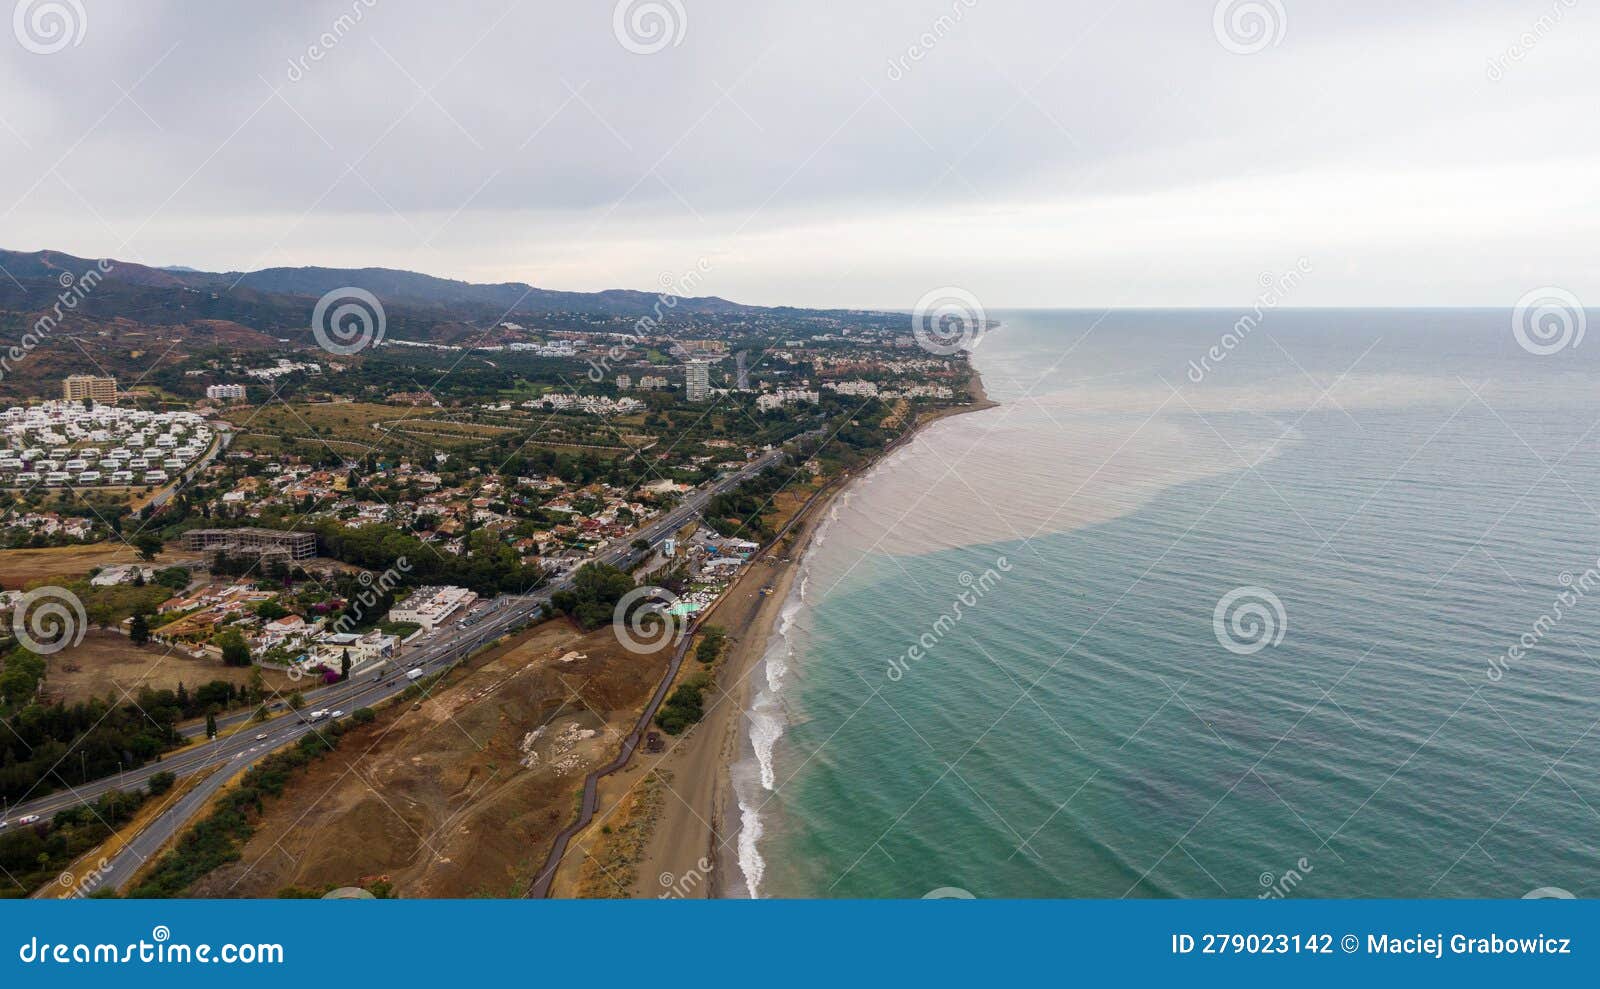 aerial view on coast of alboran sea, buildings and resorts in marbella, spain